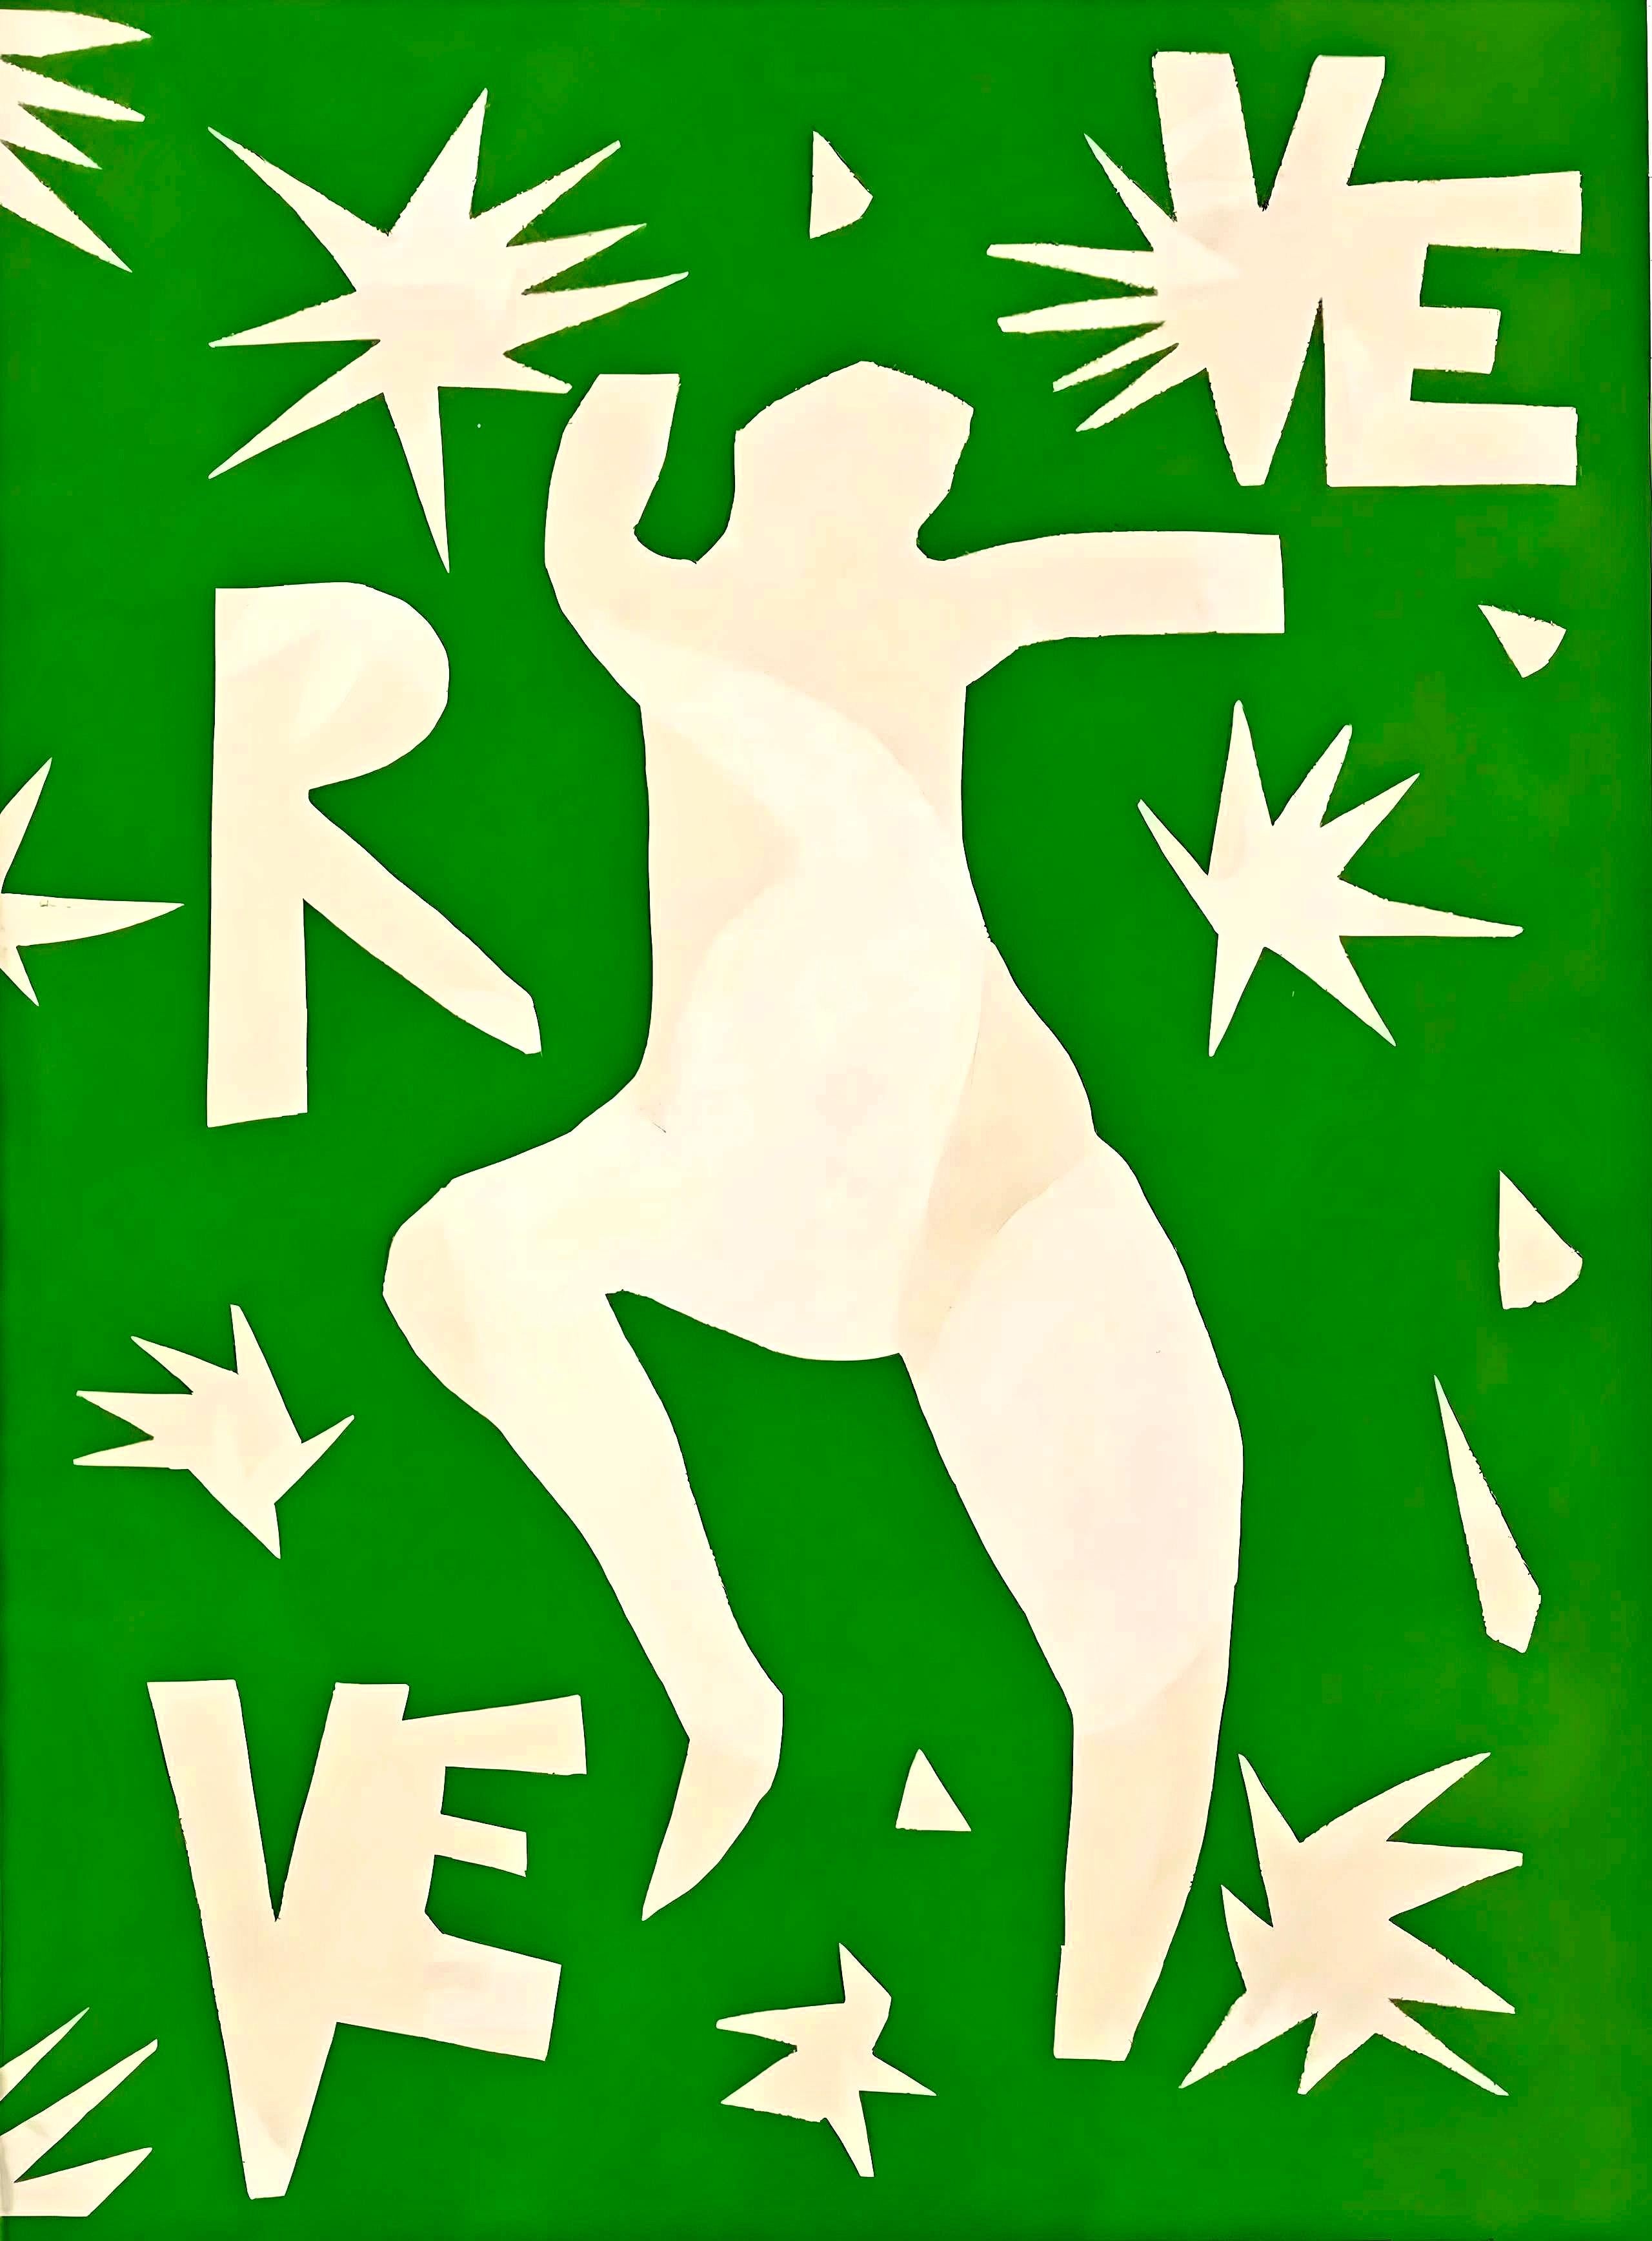 Matisse, Couverture, Verve: Revue Artistique et Littéraire (after)